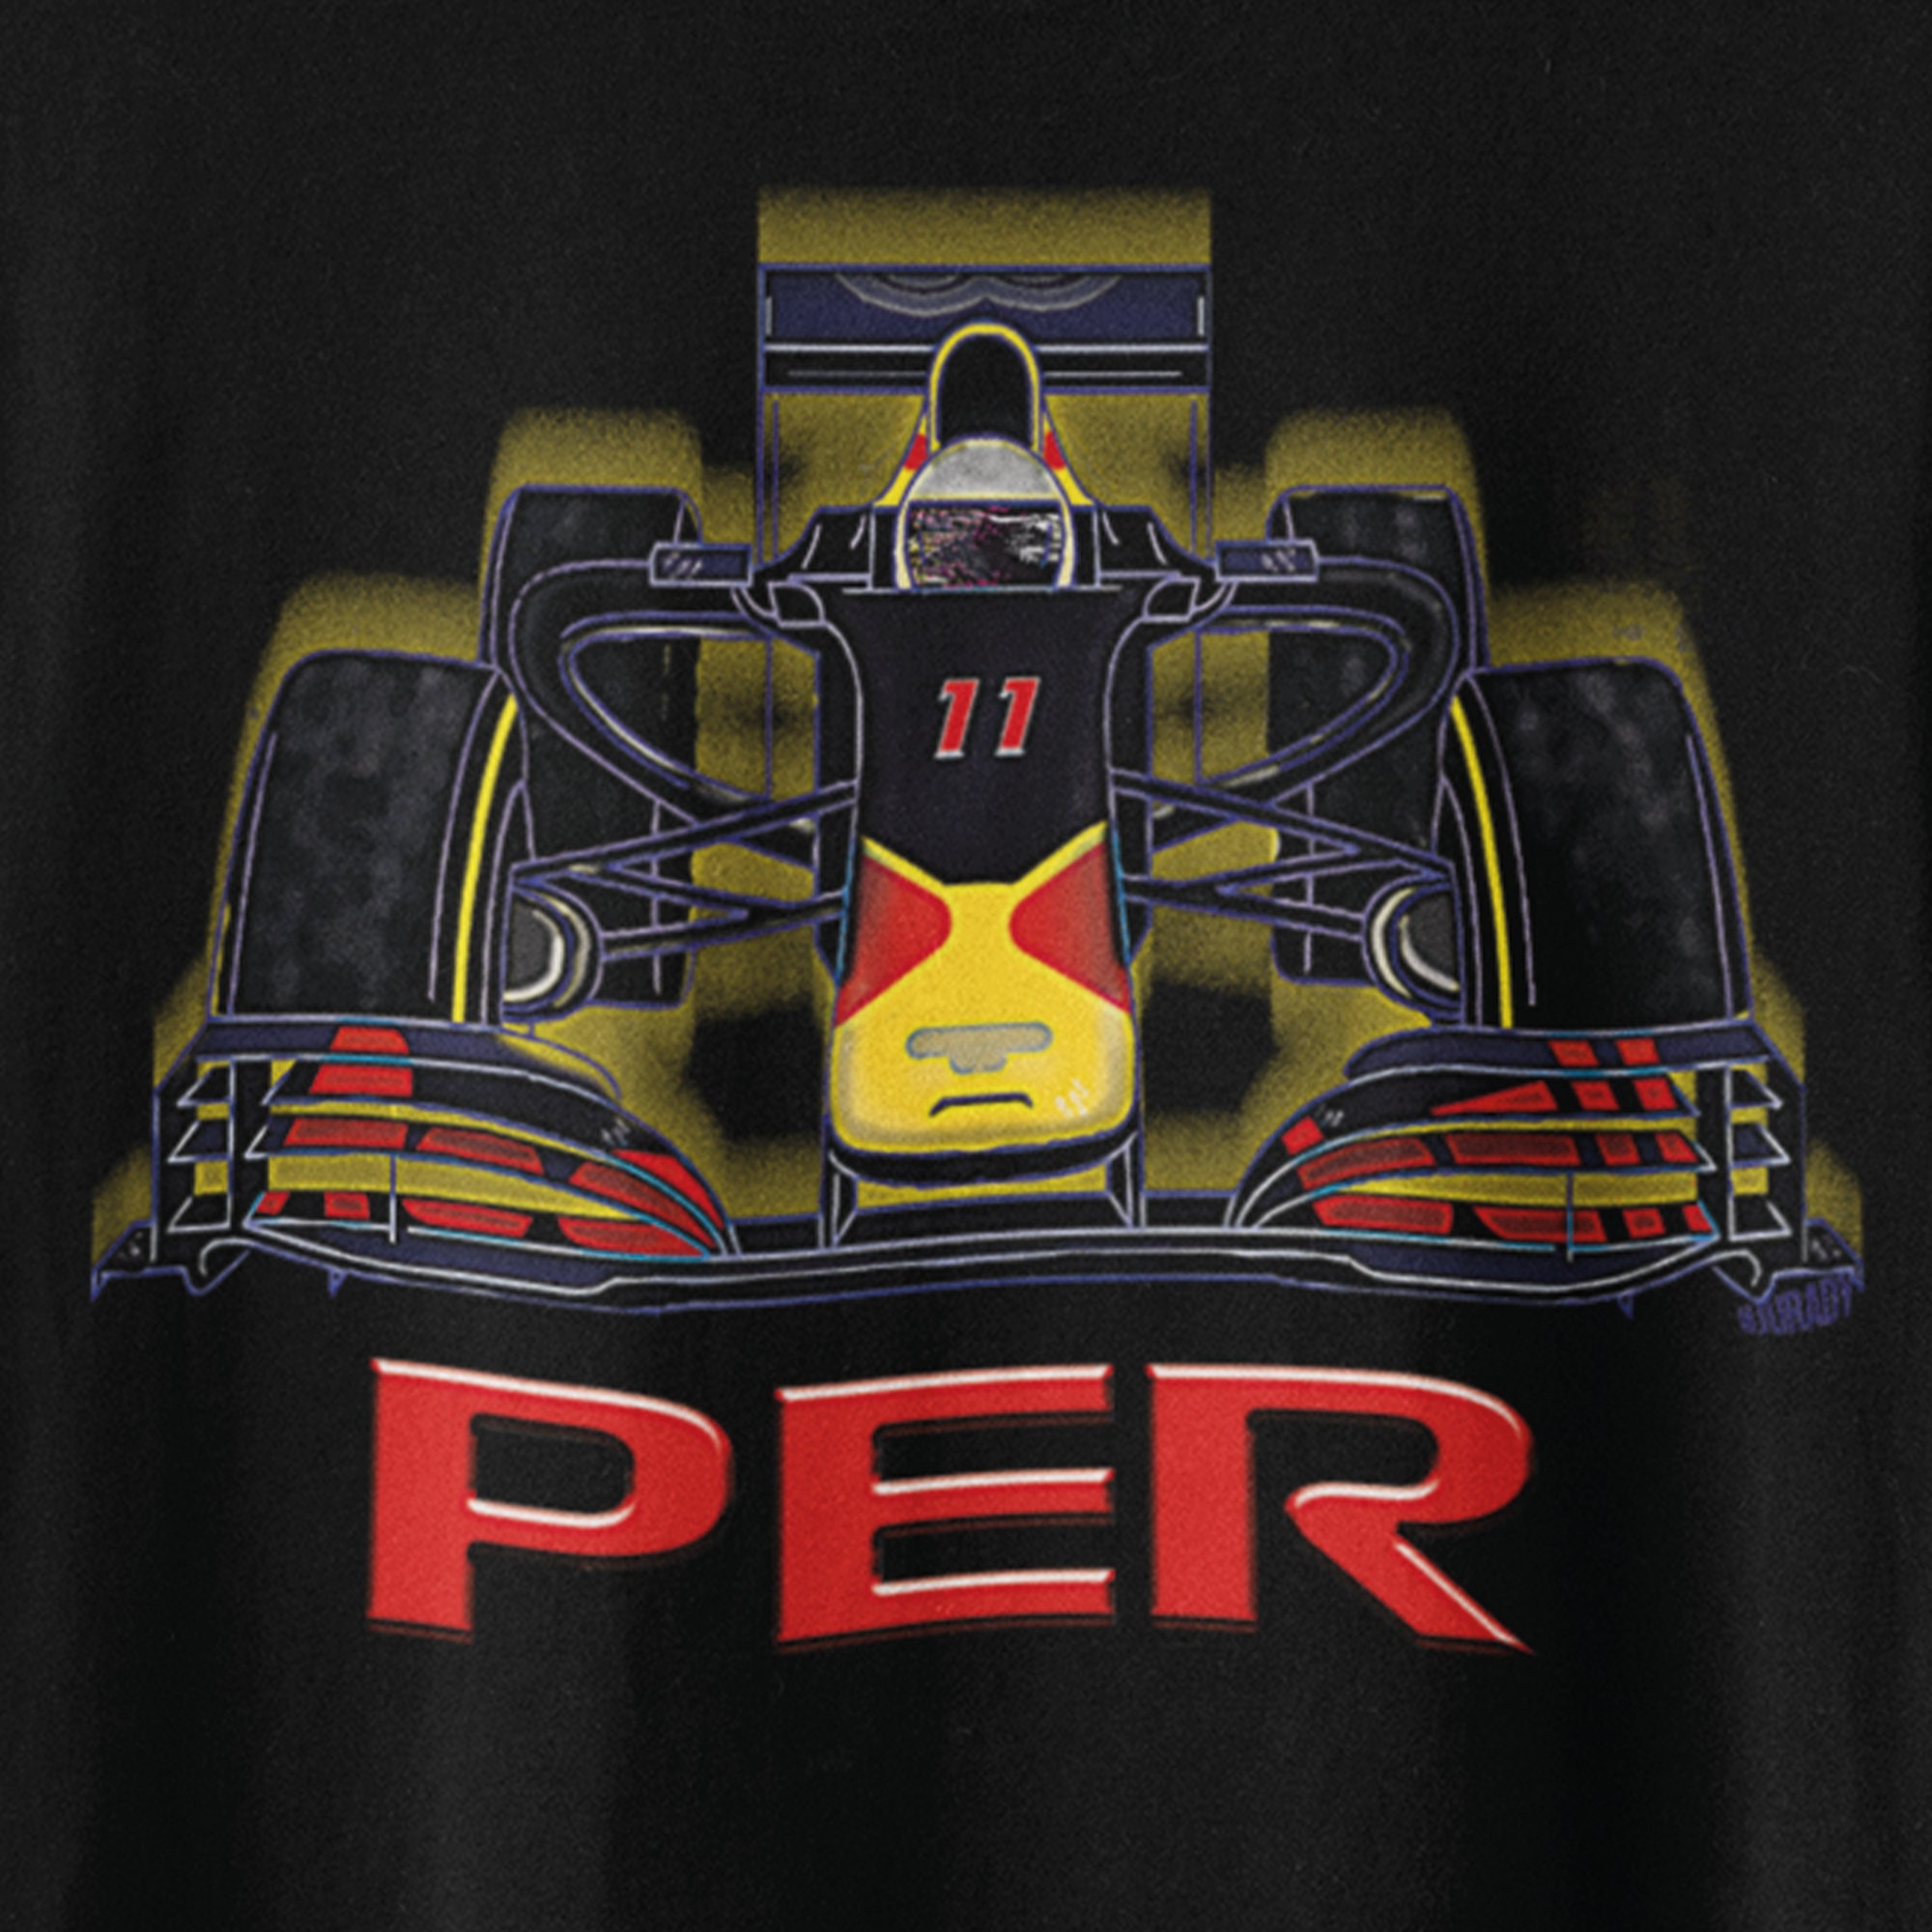 Sergio Perez F1 T-Shirts, Checo Formula 1 Clothing, Shirts, Merchandise